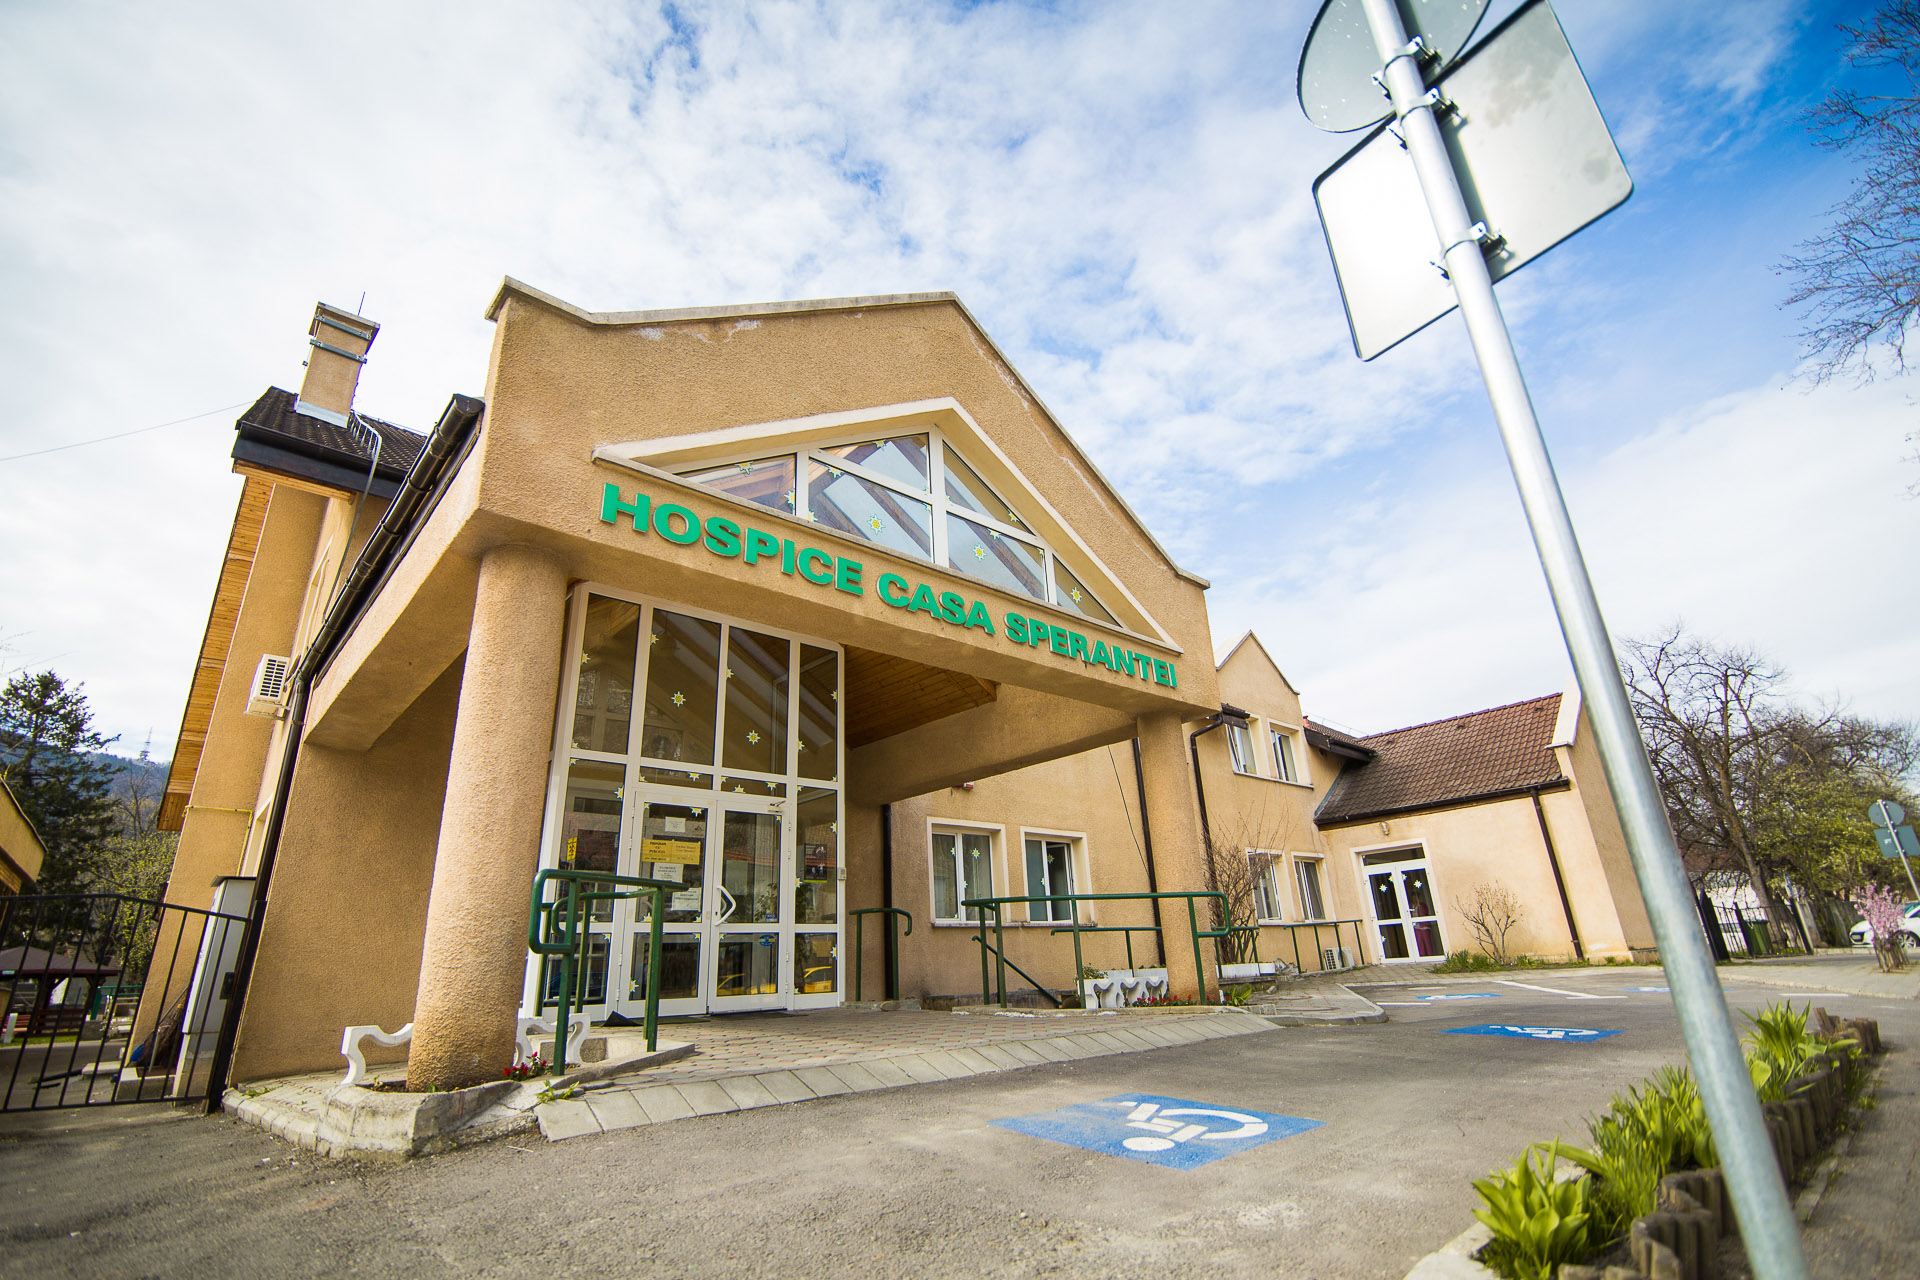 HOSPICE – Centre de îngrijiri paliative